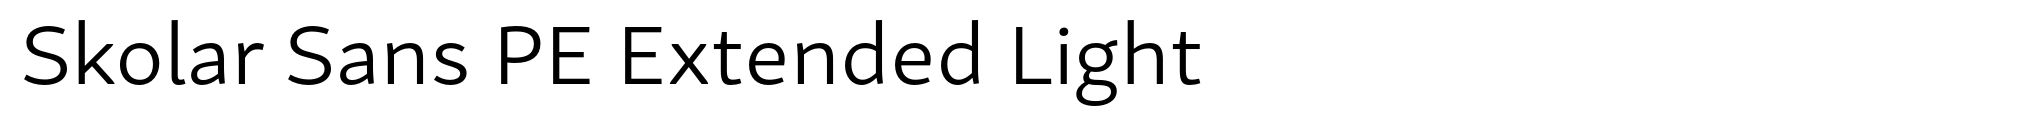 Skolar Sans PE Extended Light image